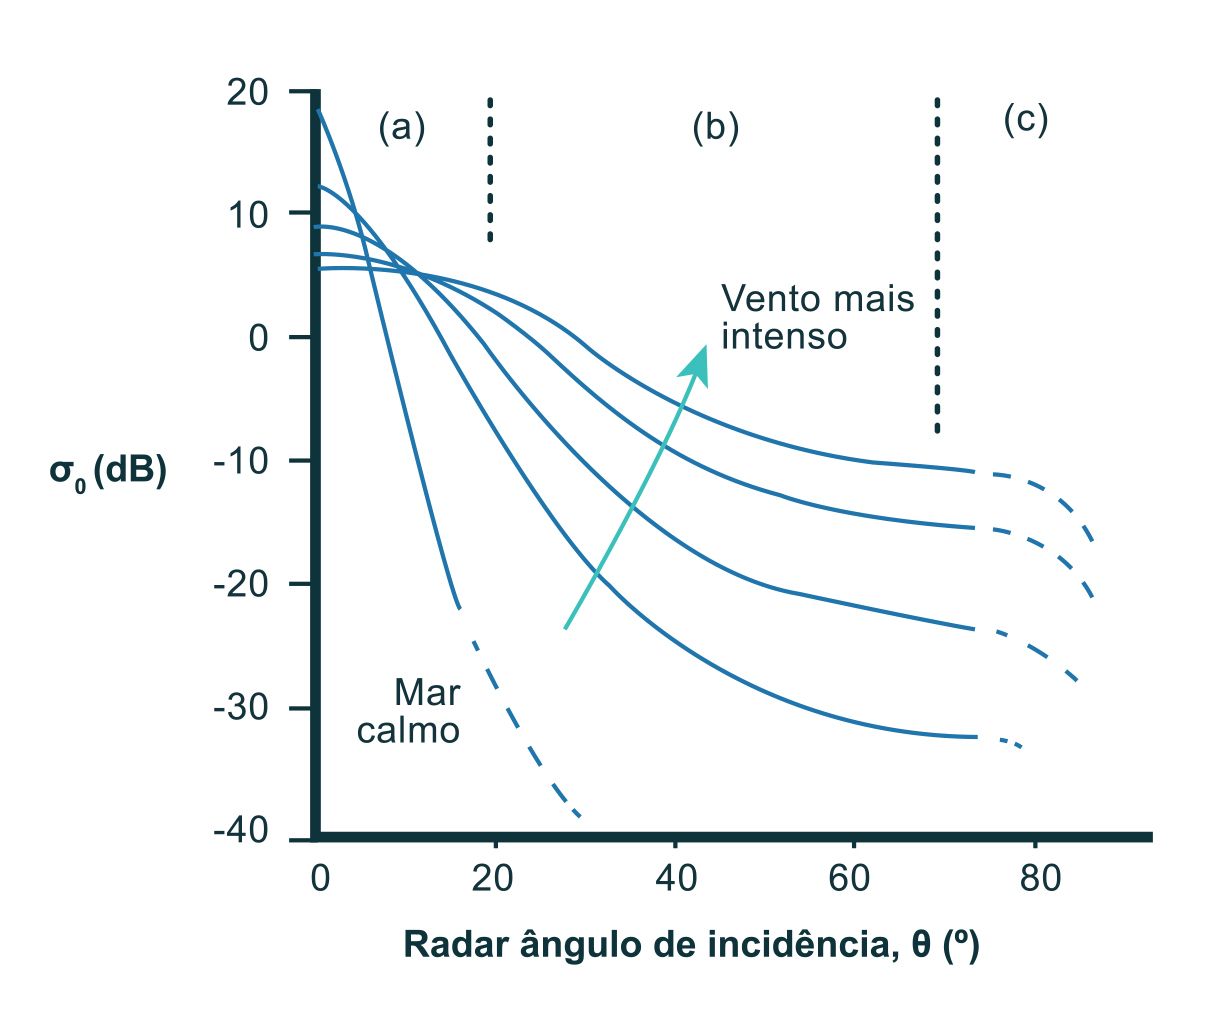 Variação da intensidade do coeficiente de retrodifusão (eixo yy) com o ângulo de incidência (eixo xx) e a velocidade do vento, que aumenta na direção da seta. A difusão de Bragg é dominante nos ângulos contidos na secção assinalada por (b) (adaptado de Robinson, 2004). A medida da radiação difundida é designada por normalised radar backscatter, (sigma)0, ou a medida normalizada da radiação refletida ou coeficiente de retrodifusão, normalmente expressa em decibéis (dB), e é a medida que vem associada a cada píxel numa imagem SAR calibrada. A retrodifusão só ocorre quando a superfície do mar tem rugosidade com escala semelhante à da radiação do SAR que, por sua vez, só ocorre na presença de vento. Na ausência de vento a retrodifusão será nula pois o mar irá comportar- se como uma superfície lisa, promovendo desta forma a reflexão especular. A intensidade do sinal retrodifundido medido pelo SAR irá aumentar com o aumento do vento, e logo, com o aumento da rugosidade do mar. Como se pode ver na figura, a intensidade do sinal também depende do ângulo de incidência da radiação, sendo maior para ângulos menores. A utilização deste ficheiro é regulada nos termos da licença Creative Commons Attribution 4.0 (CC BY-NC-ND 4.0, https://creativecommons.org/licenses/by-nc-nd/4.0/)